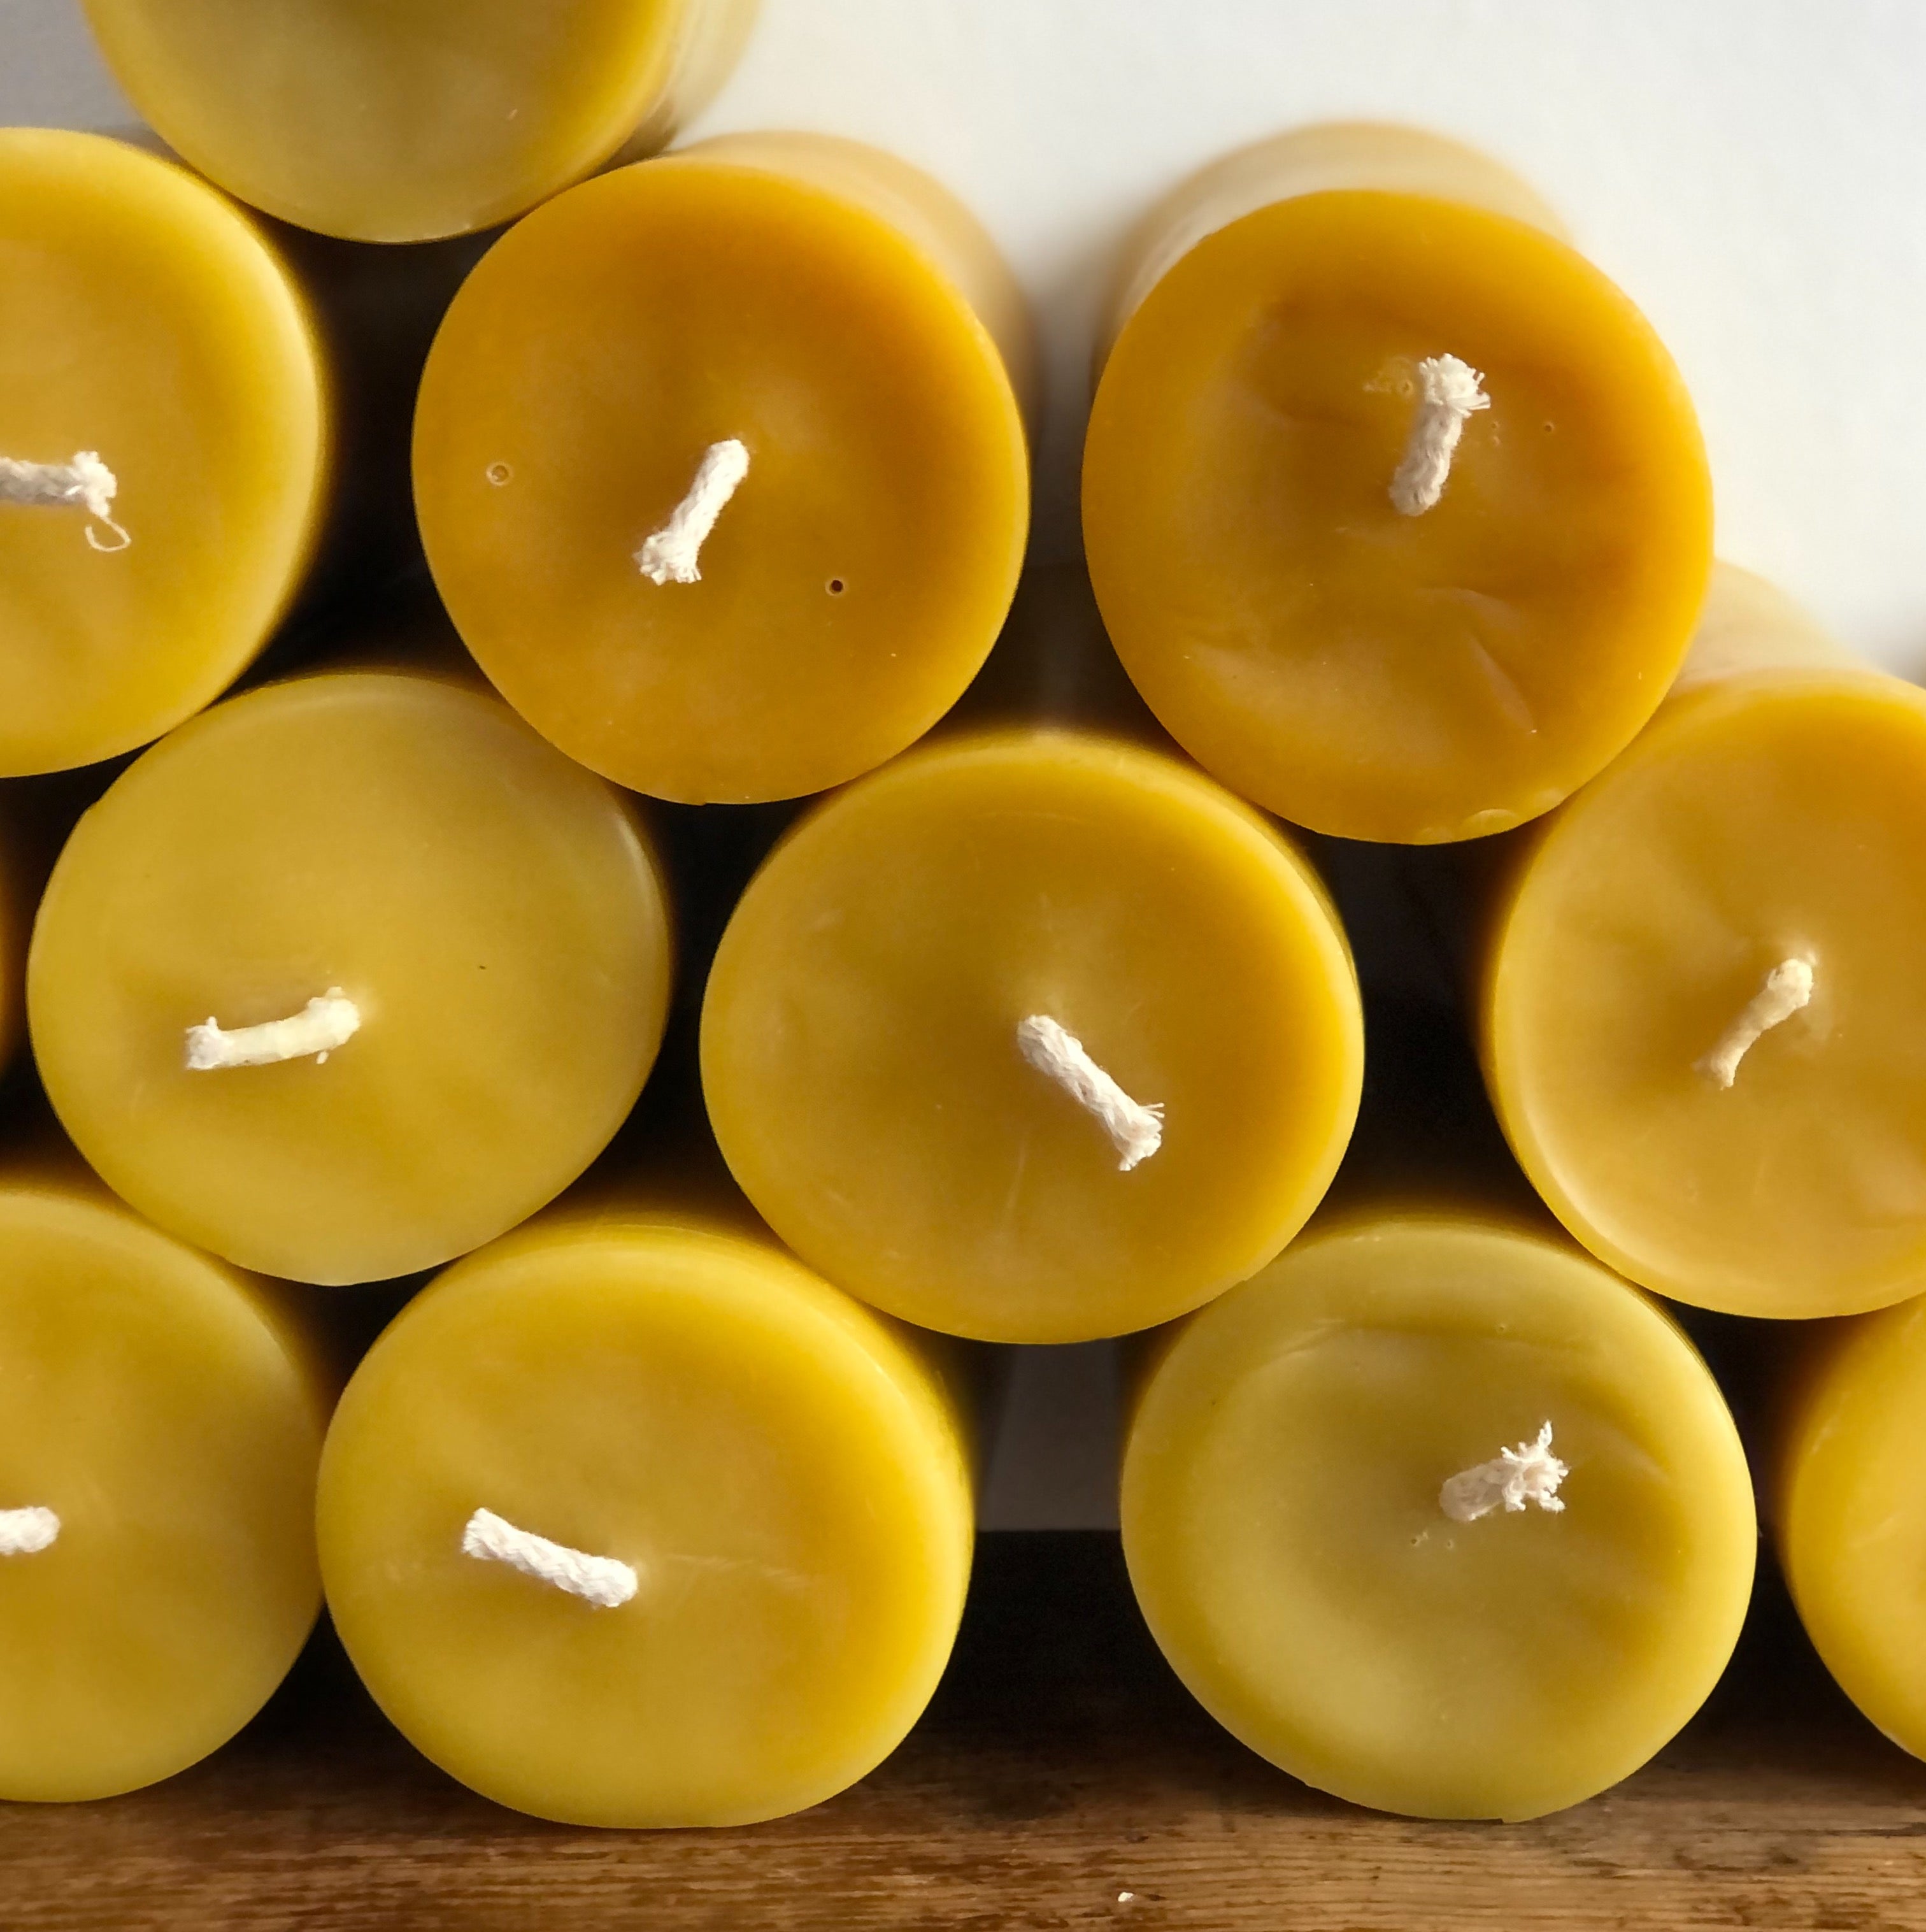 Benefits of Beeswax Candles: A Better Burn – rockflowerpaper LLC